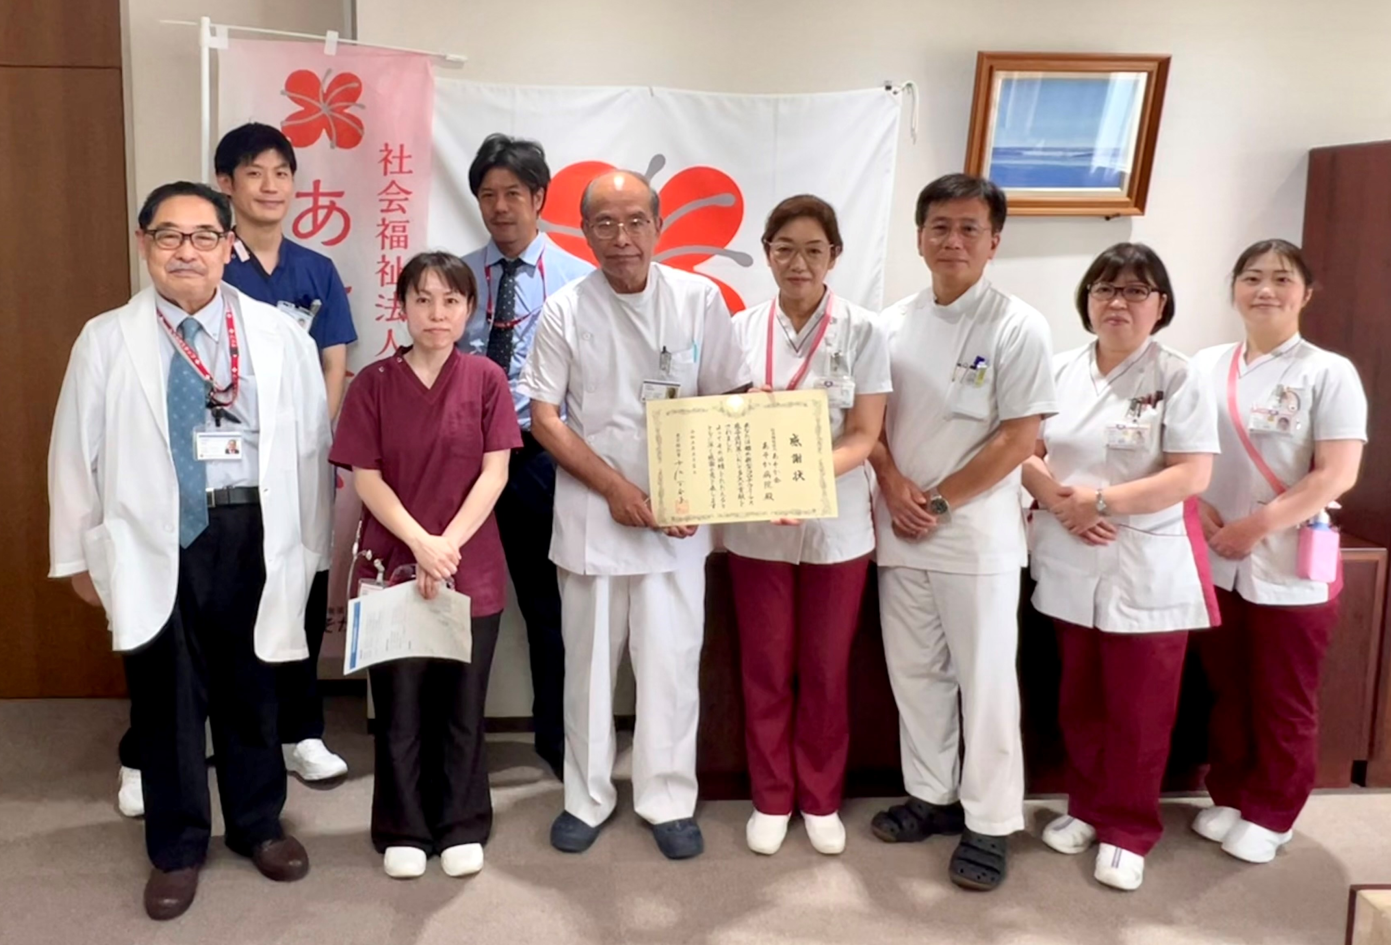 新型コロナウィルス感染症への積極的な取り組みをした病院として東京都から表彰されました。